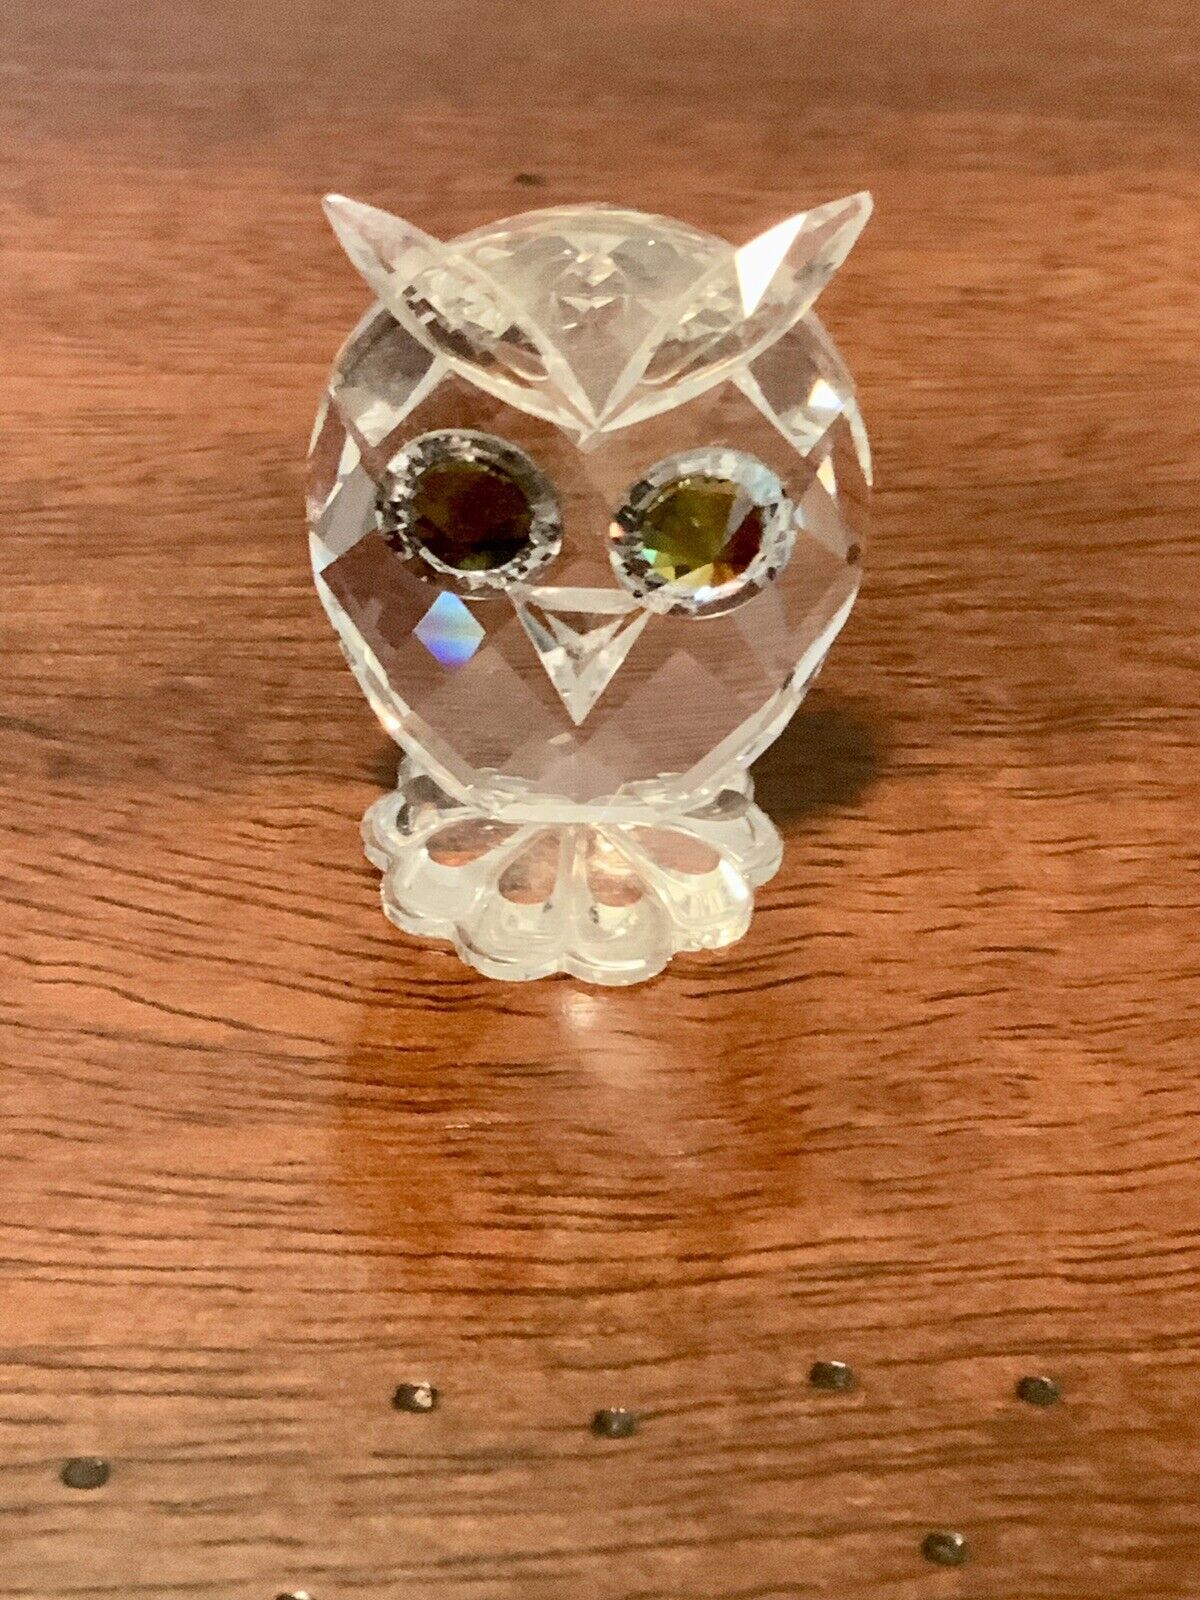 Sweet Vintage SWAROVSKI Crystal - MINI OWL - 1-3/8